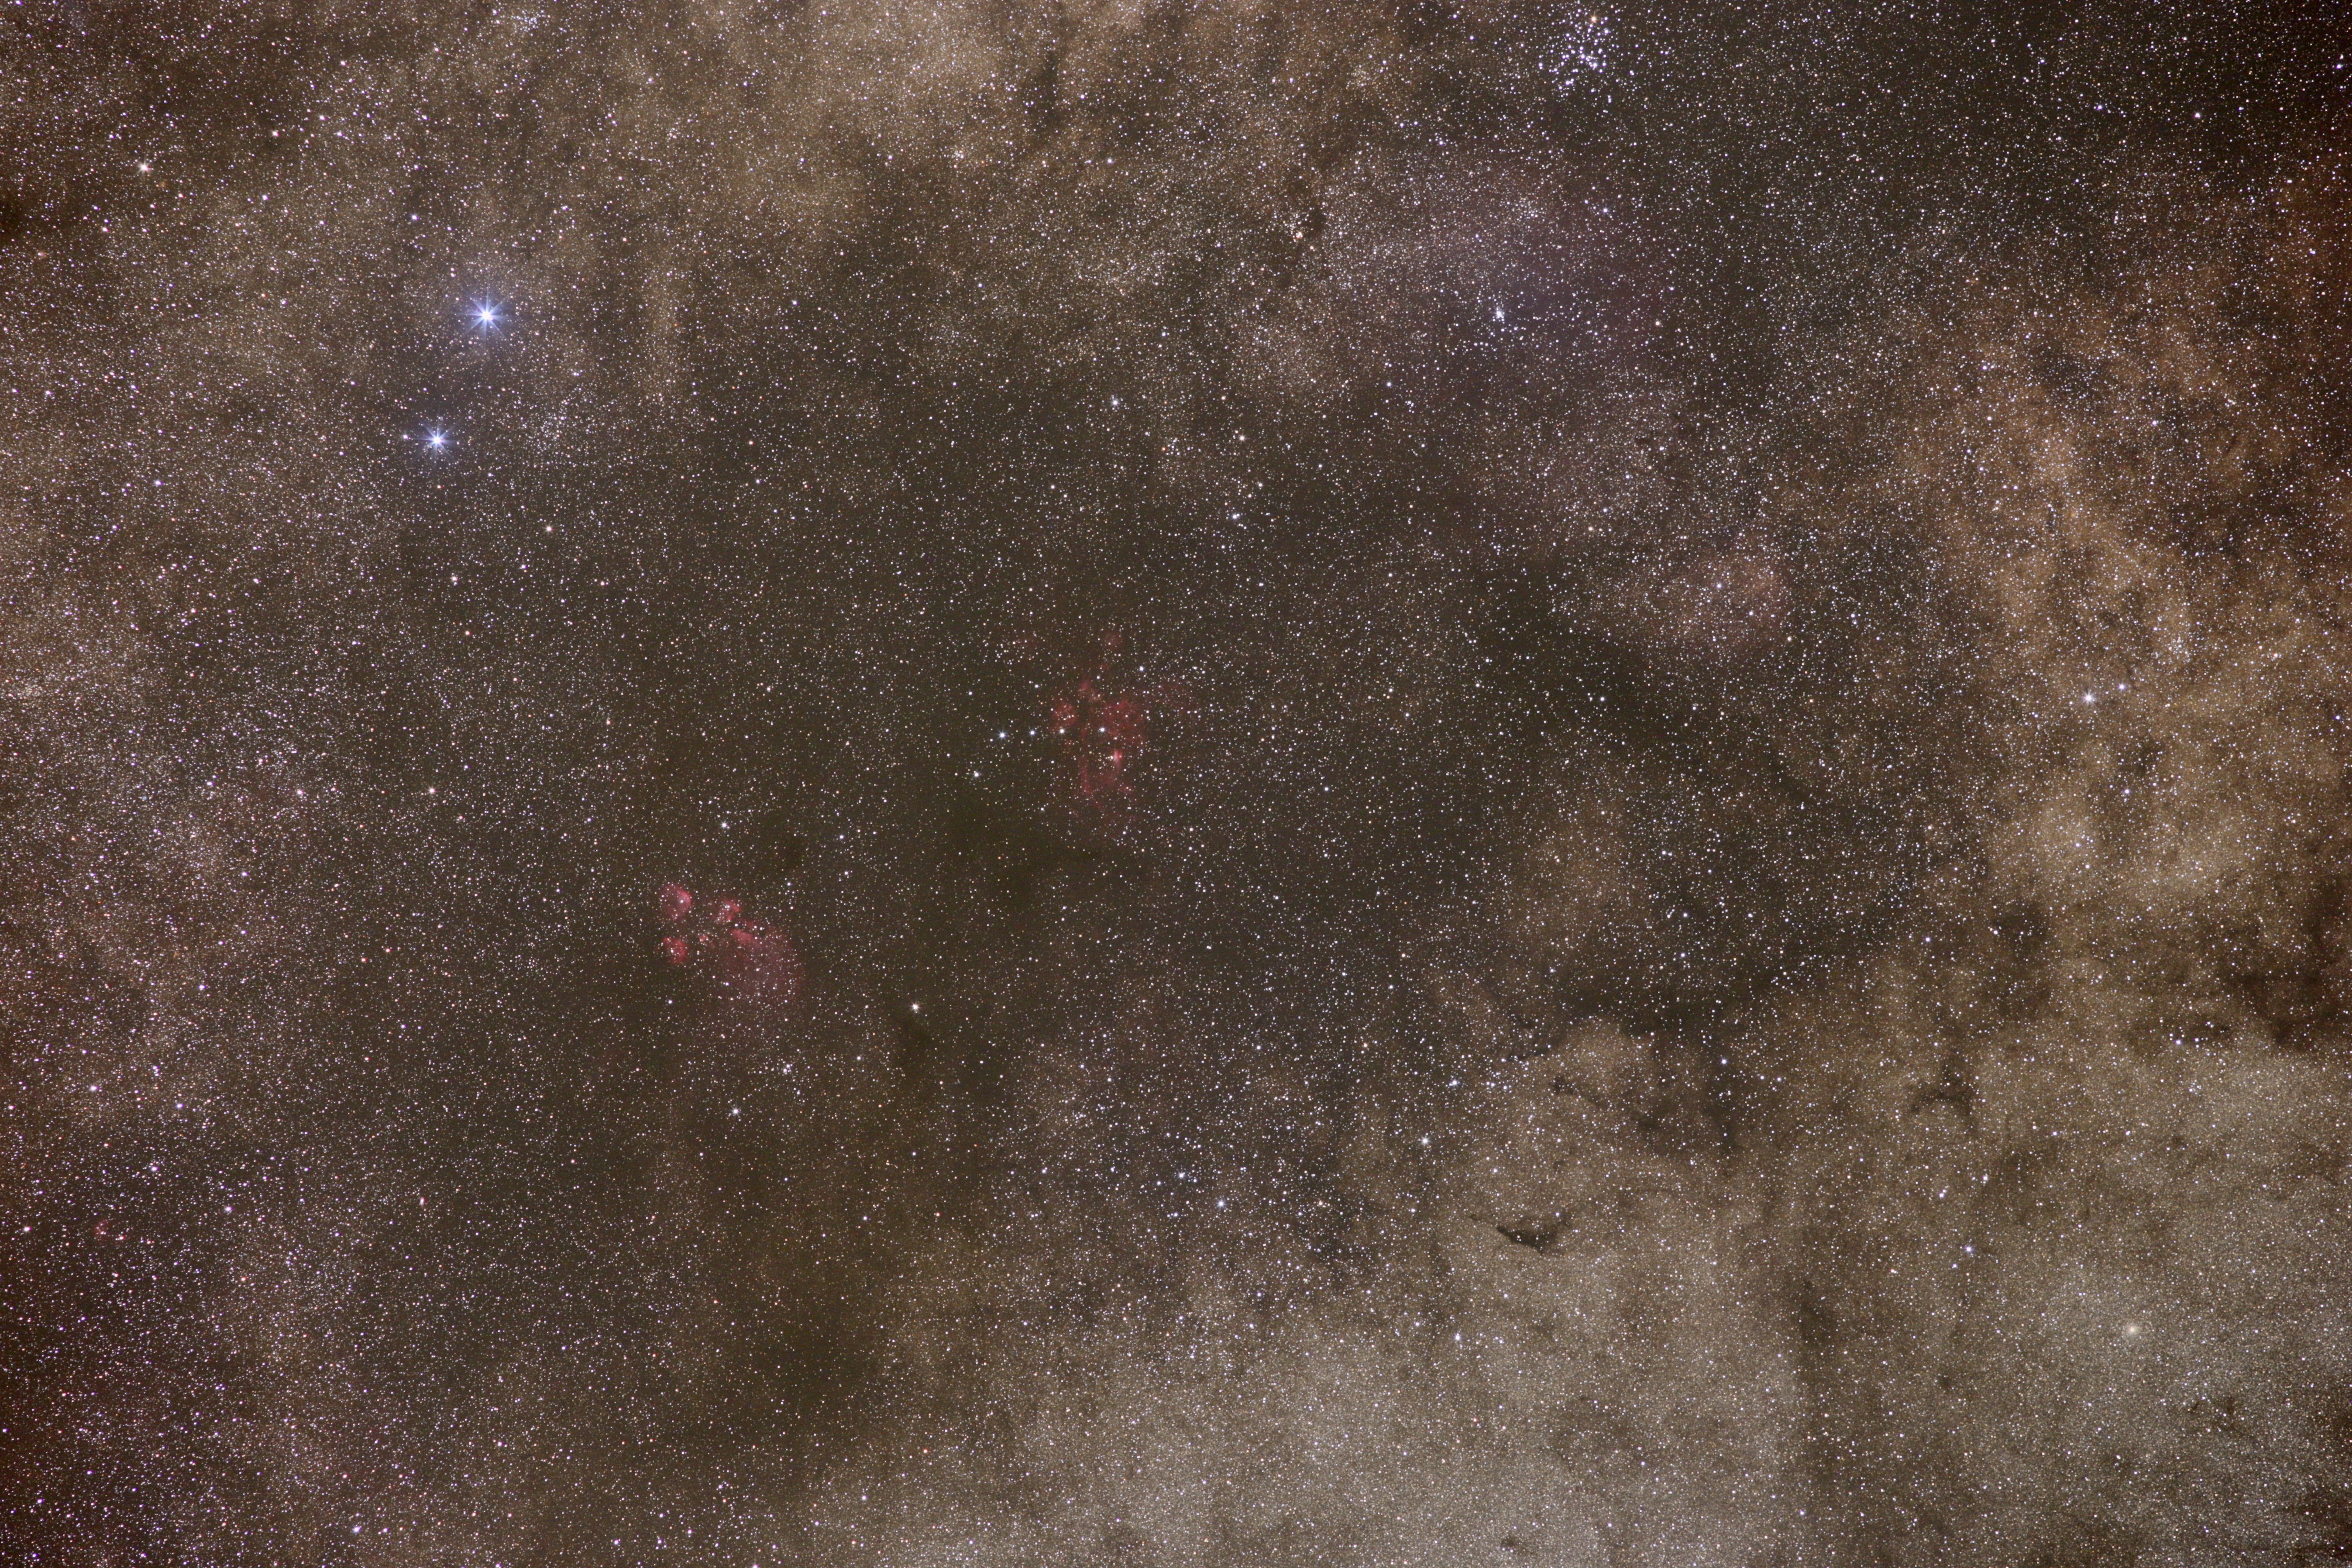 NGC 6334/6357 (Sco)